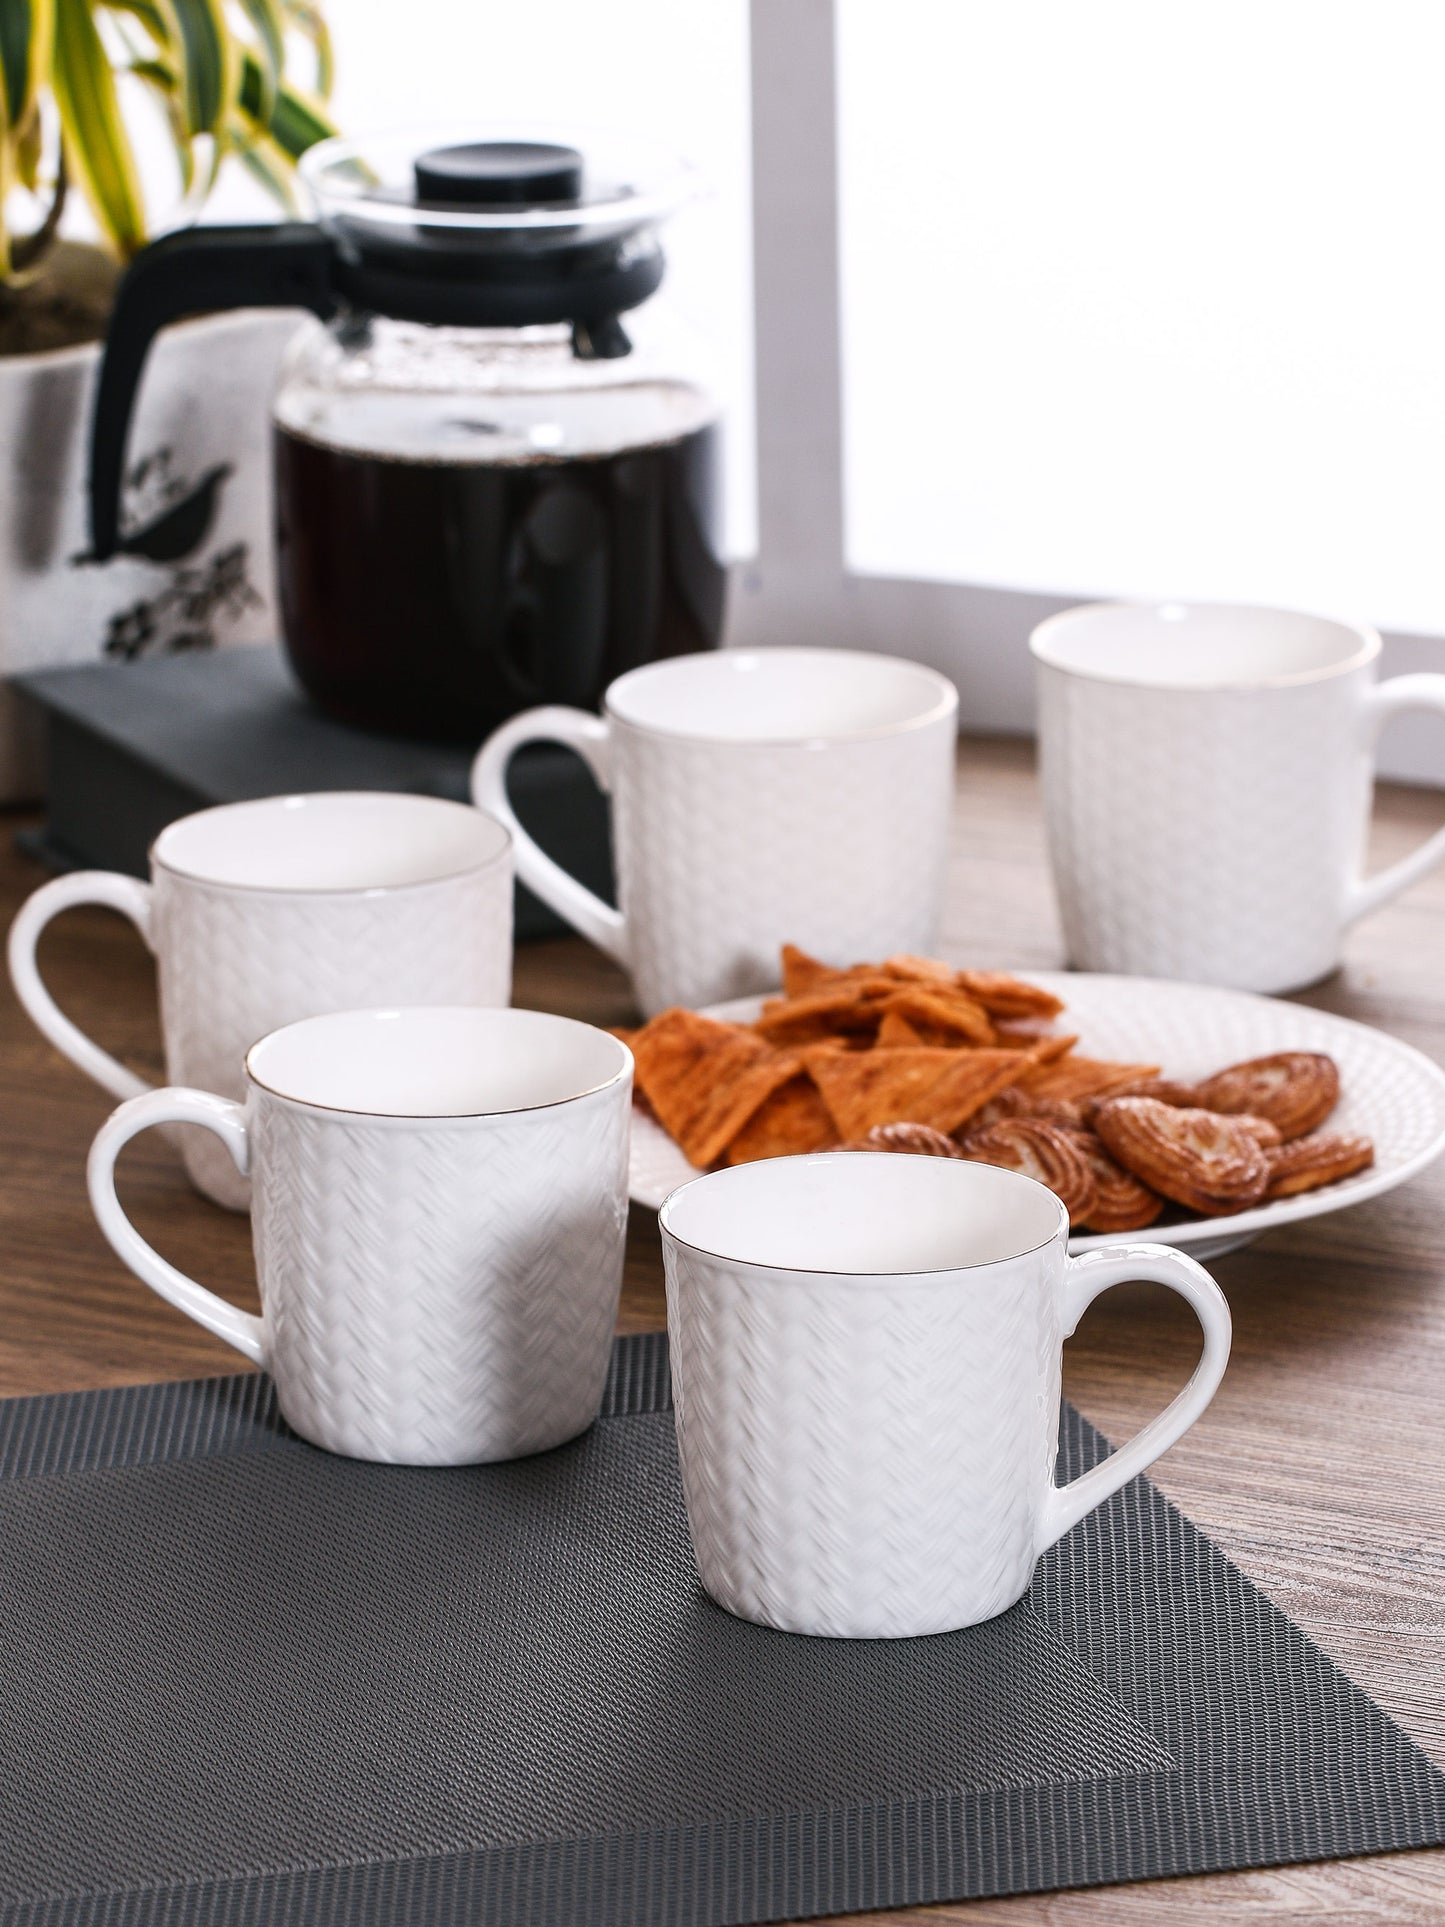 Cane Impression Coffee & Tea Mugs, 220ml, Set of 6, (1101) - Clay Craft India